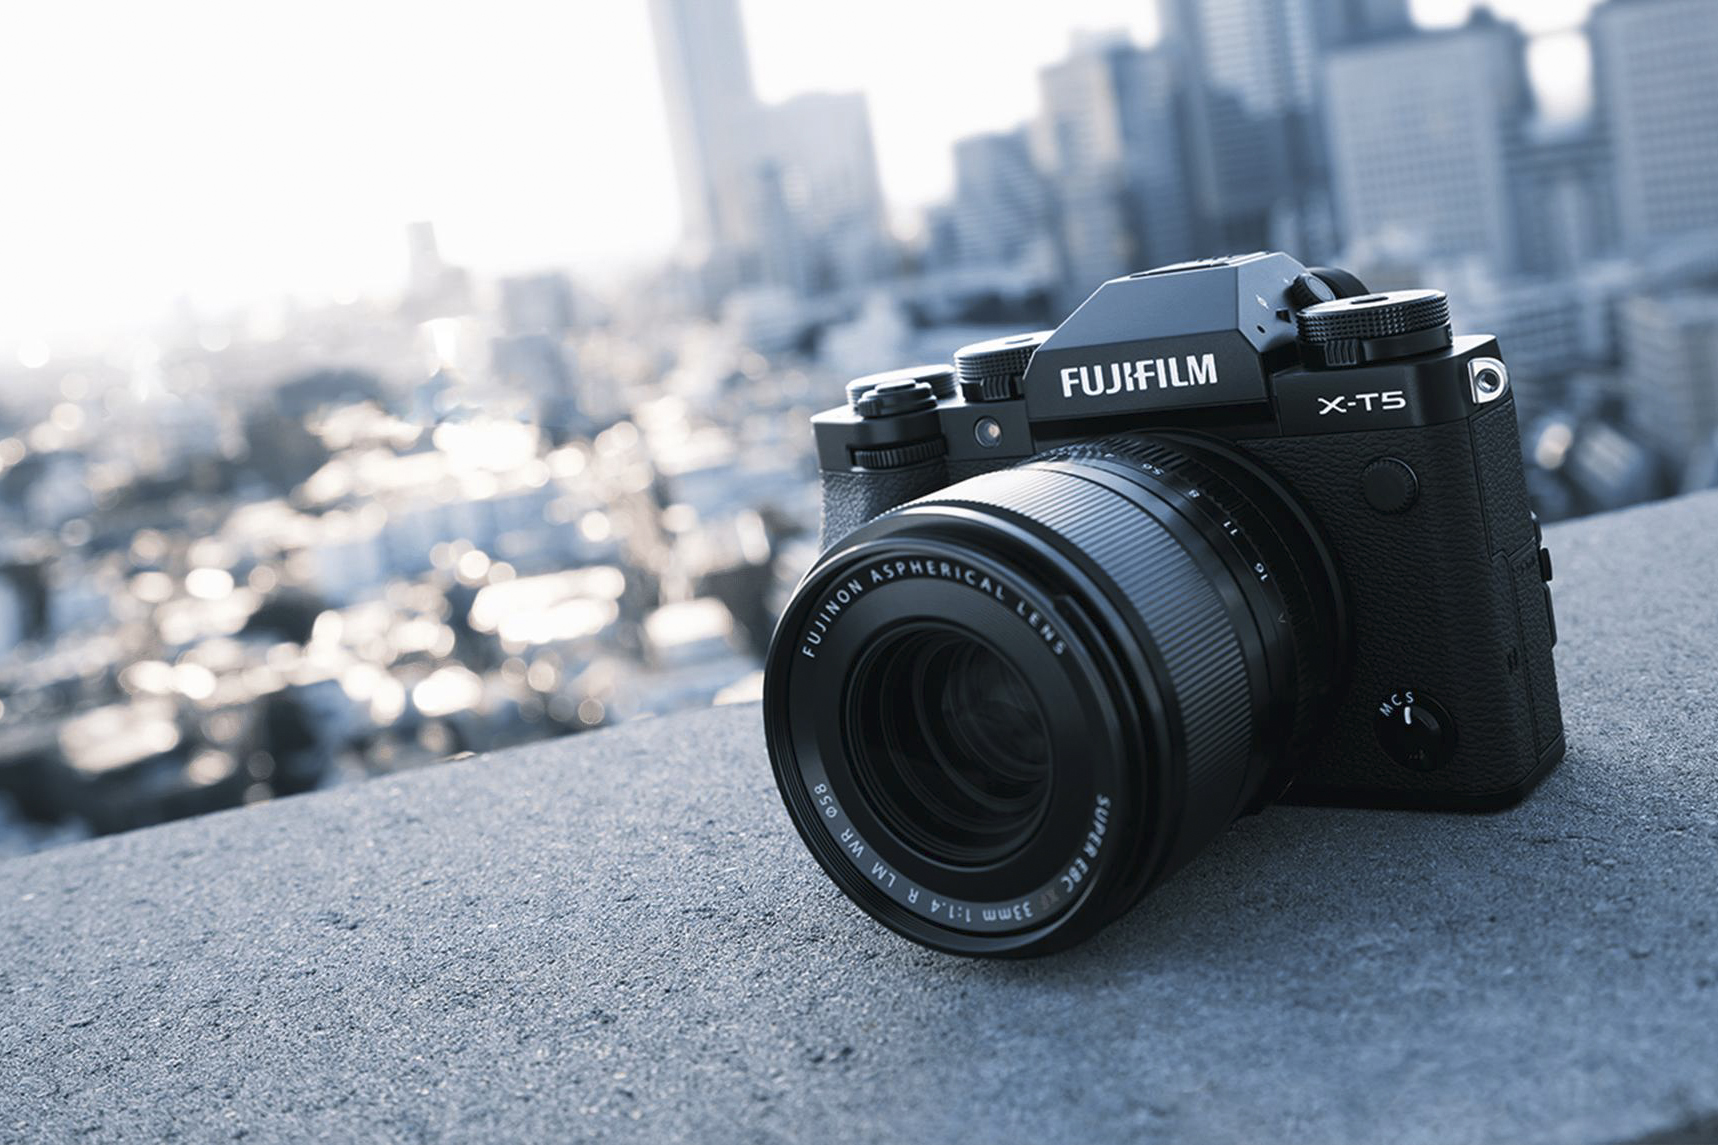 کمپانی فوجی فیلم از نسل پنجم سری دوربین‌های بدون آینه(Mirrorless) با ویژگی های جدید با عرضه دوربین Fujifilm X-T5 رونمایی کرد.
